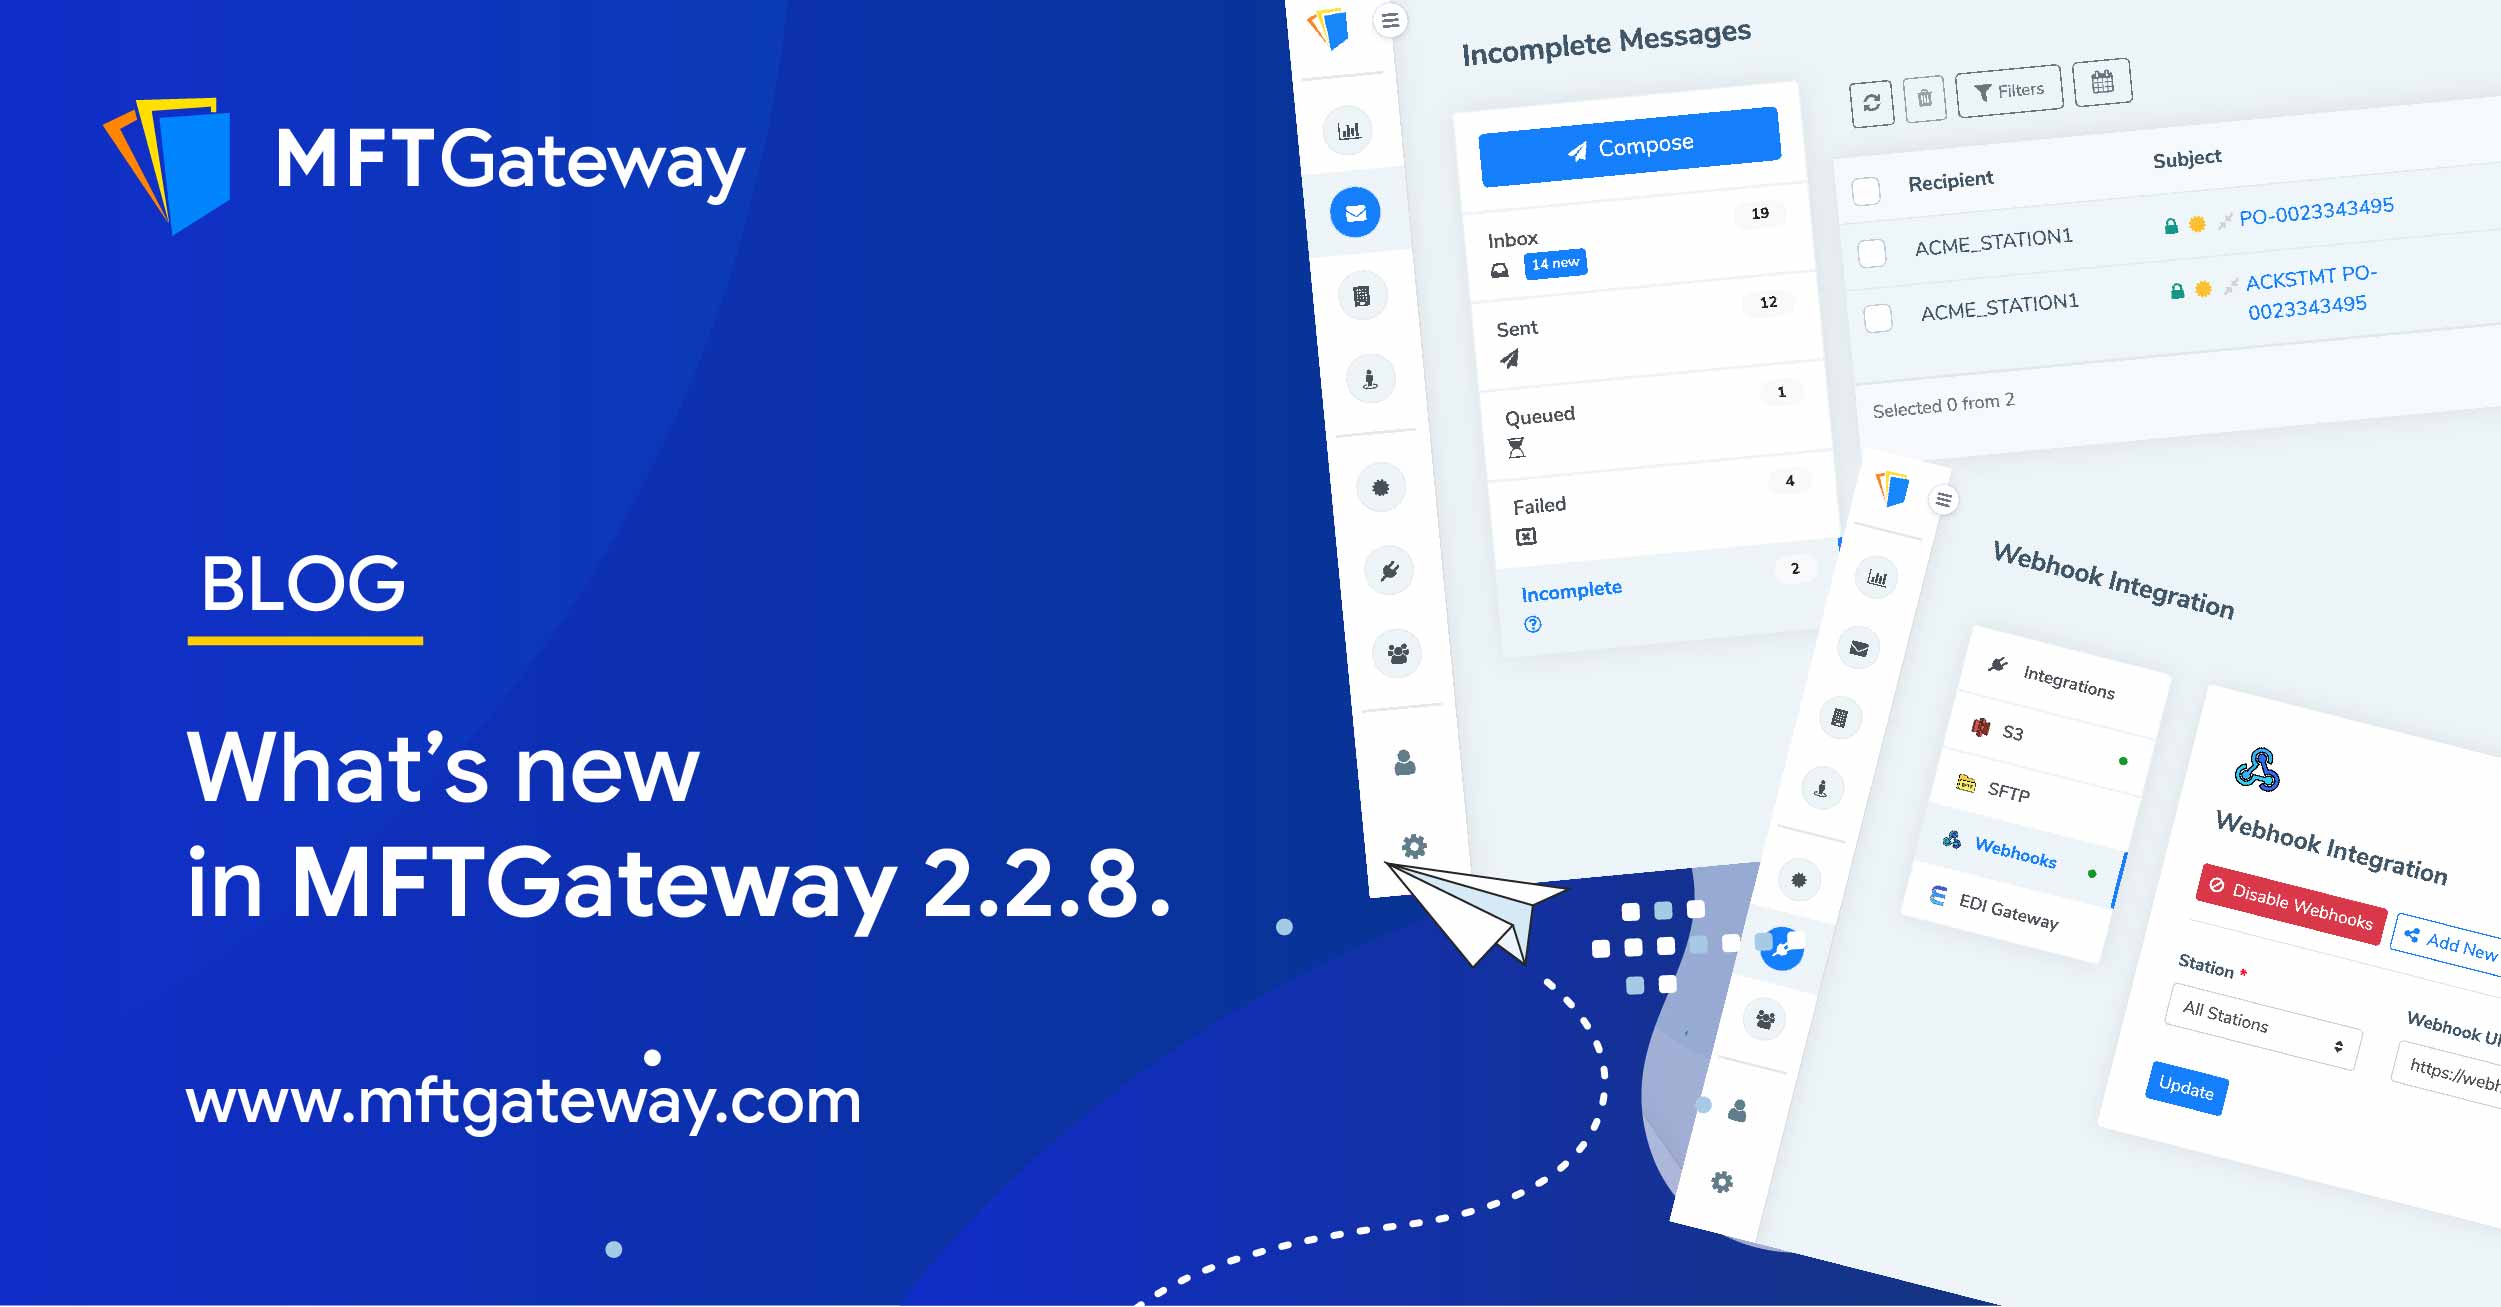 MFT Gateway 2.2.8 Release